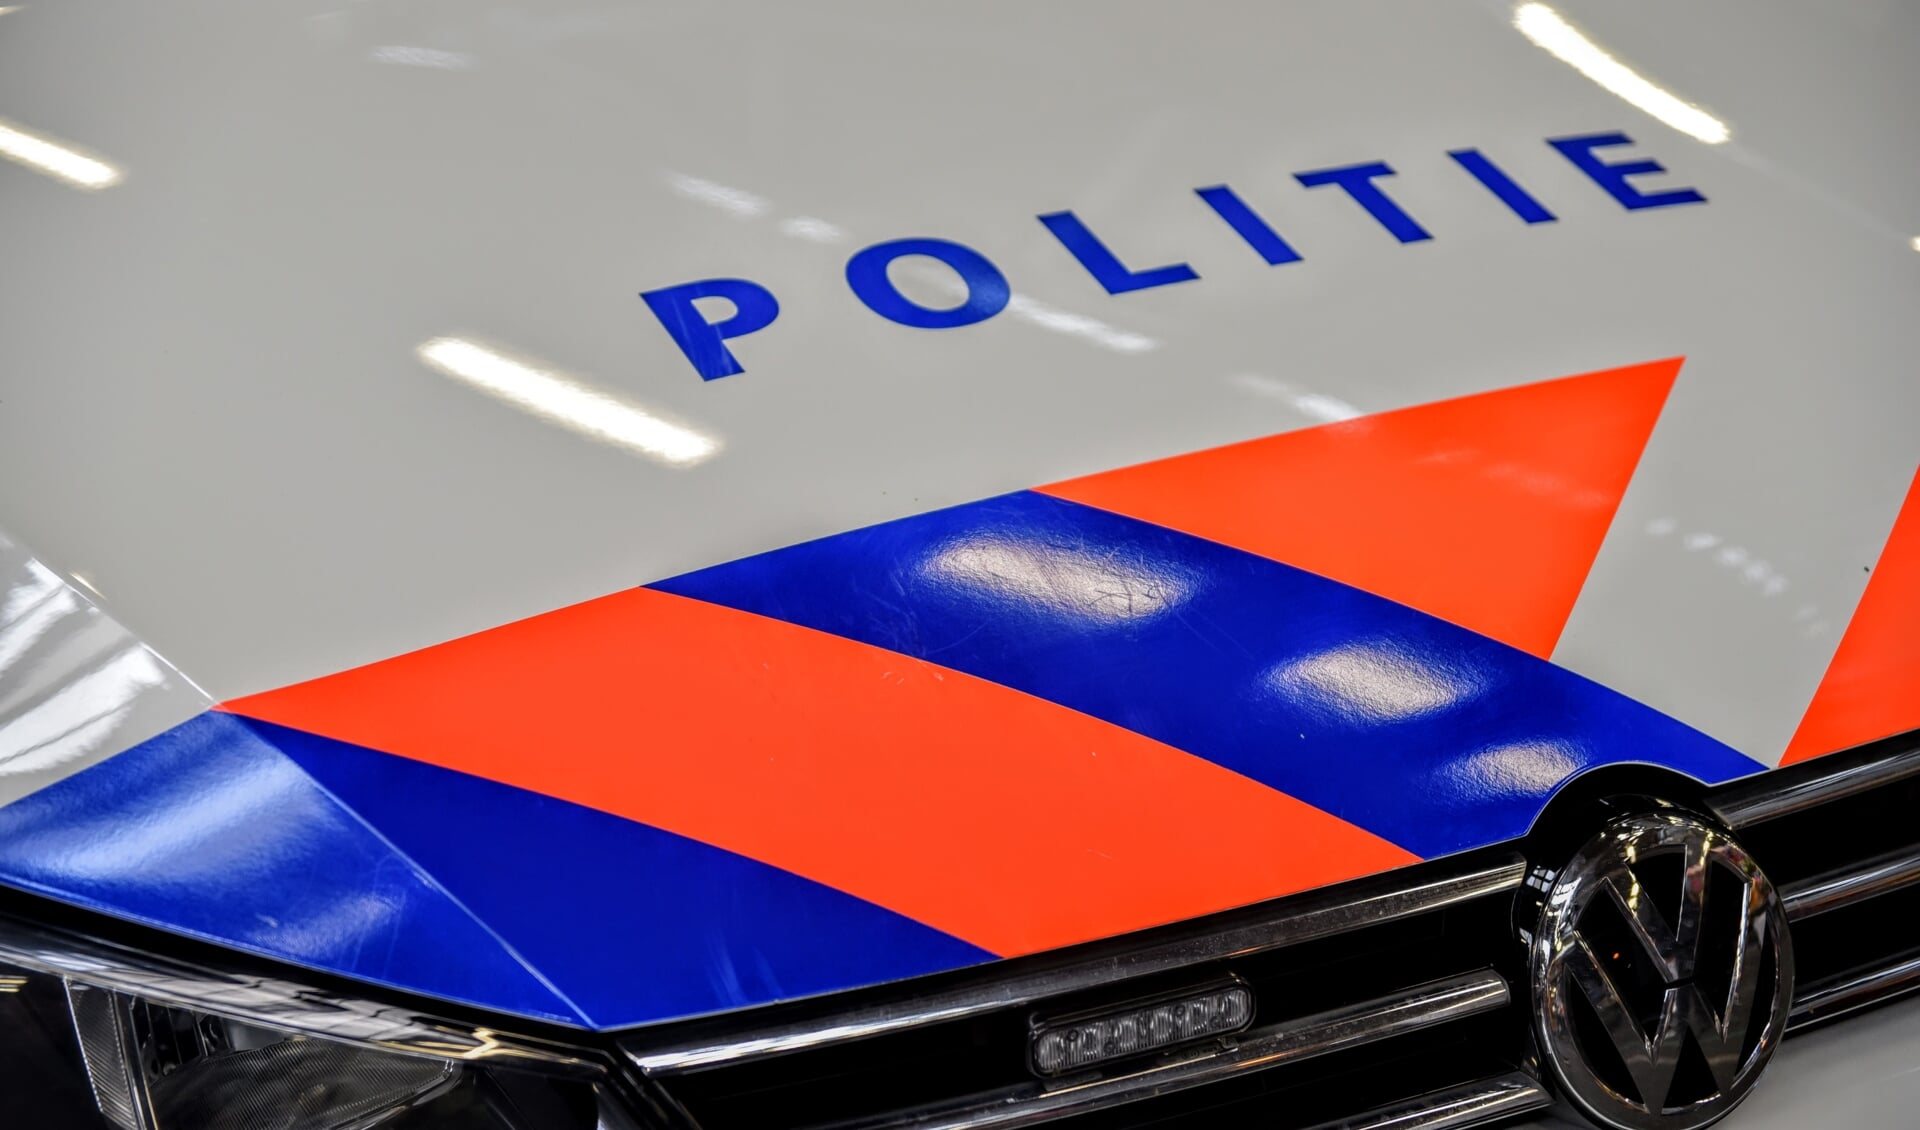 Twee mannen mishandeld tijdens voetbalevenement in Den Hoorn